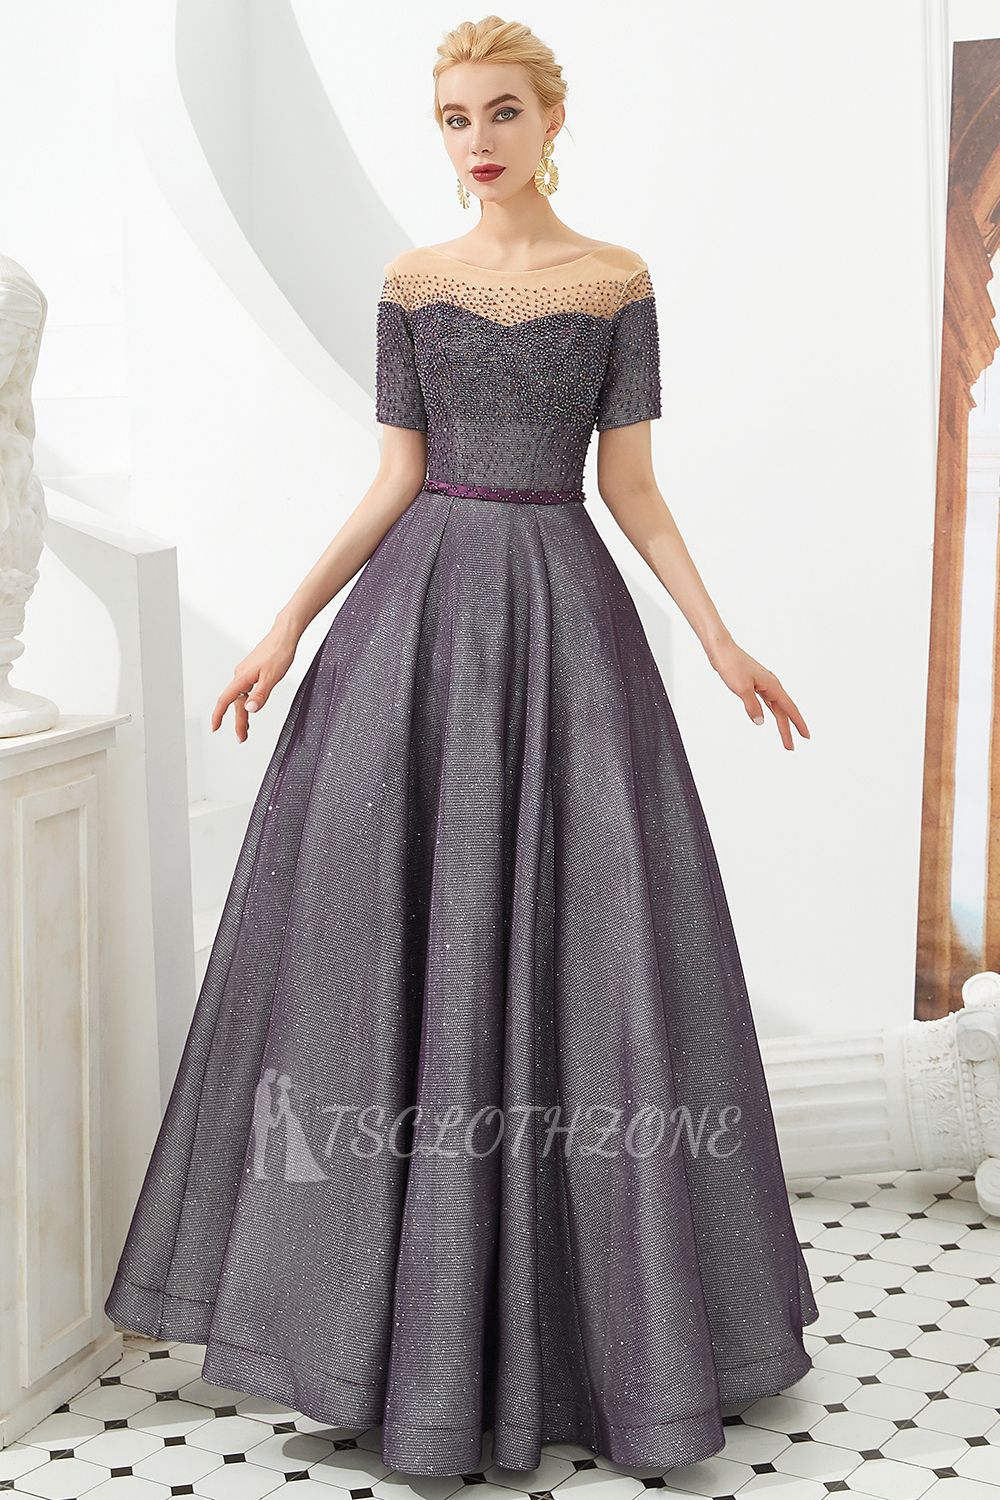 Hayden | Sparkly Regency Round Neck Abendkleid mit kurzen Ärmeln und lila Gürtel